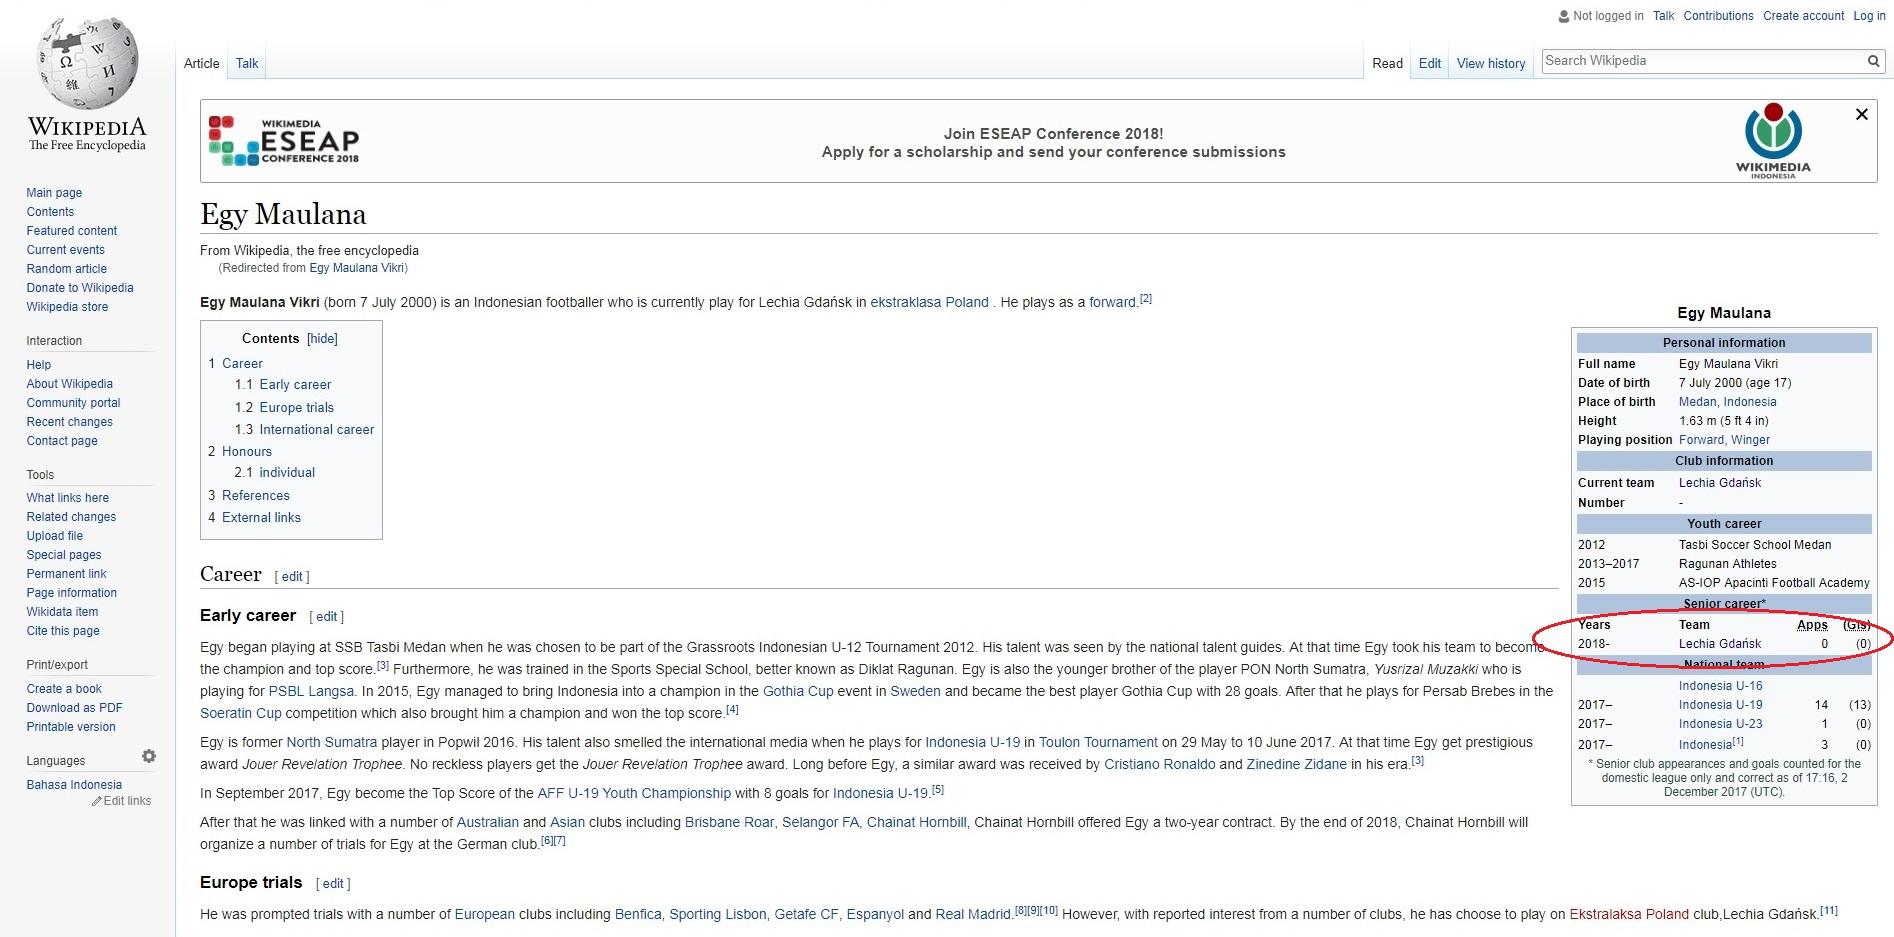 Egy Maulana Vikri gabung Lechia Gdansk versi Wikipedia Copyright: Internet